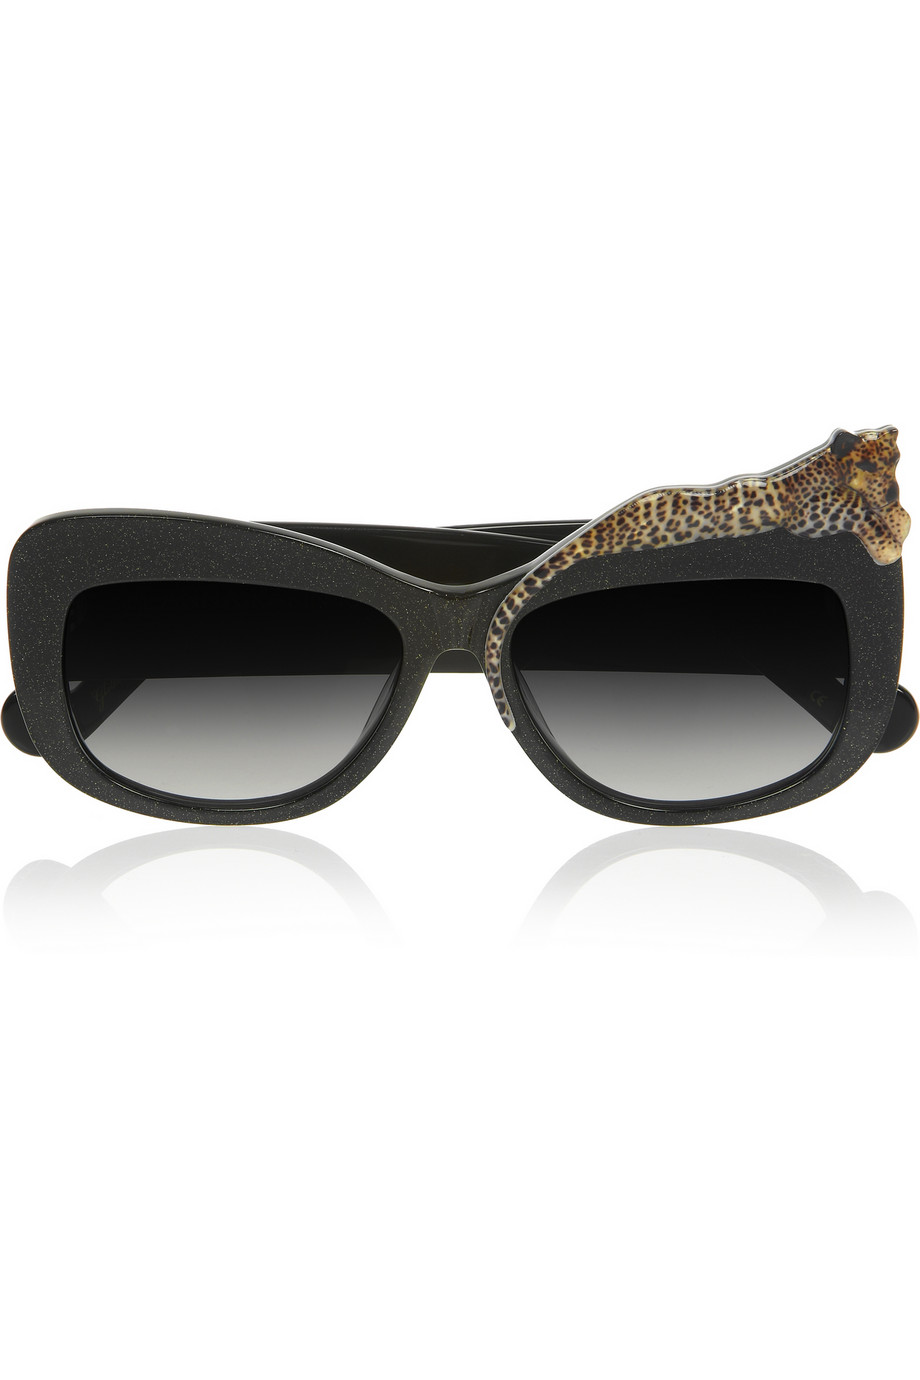 Anna Karin Karlsson Rose Et La Mer Cat Eye Acetate Sunglasses in Black ...